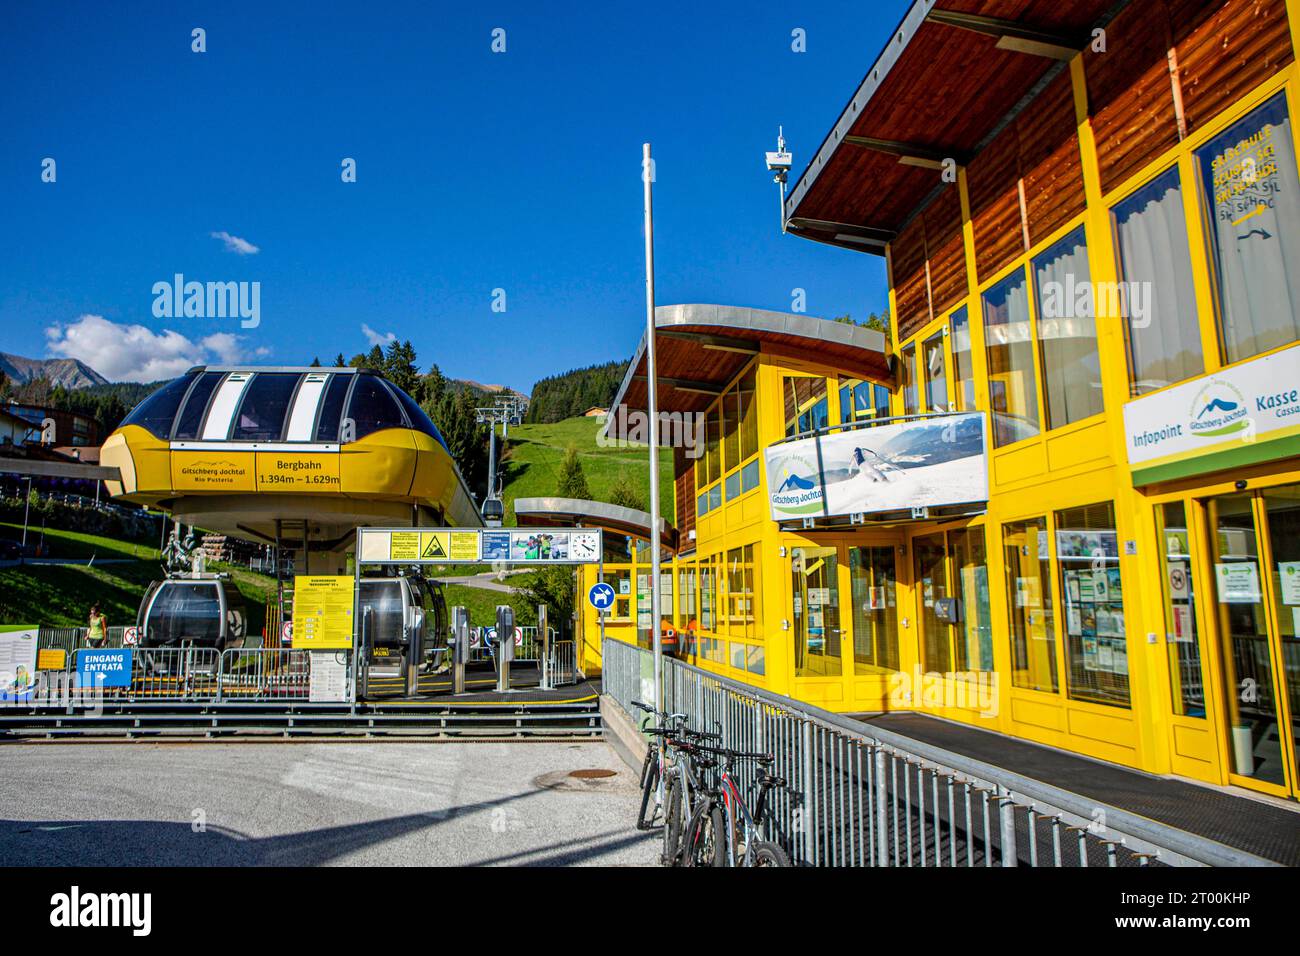 Der Gitsch oder Gitschberg ist ein 2512 m hoher Berg in den Pfunderer Bergen, einer Untergruppe der südlichen Zillertaler Alpen. Gitschbergbahn Talstation Gitschberg *** le Gitsch ou Gitschberg est une montagne de 2512 m d'altitude dans les montagnes Pfunderer, un sous-groupe des Alpes méridionales du Zillertal Gitschbergbahn Valley station Gitschberg crédit : Imago/Alamy Live News Banque D'Images